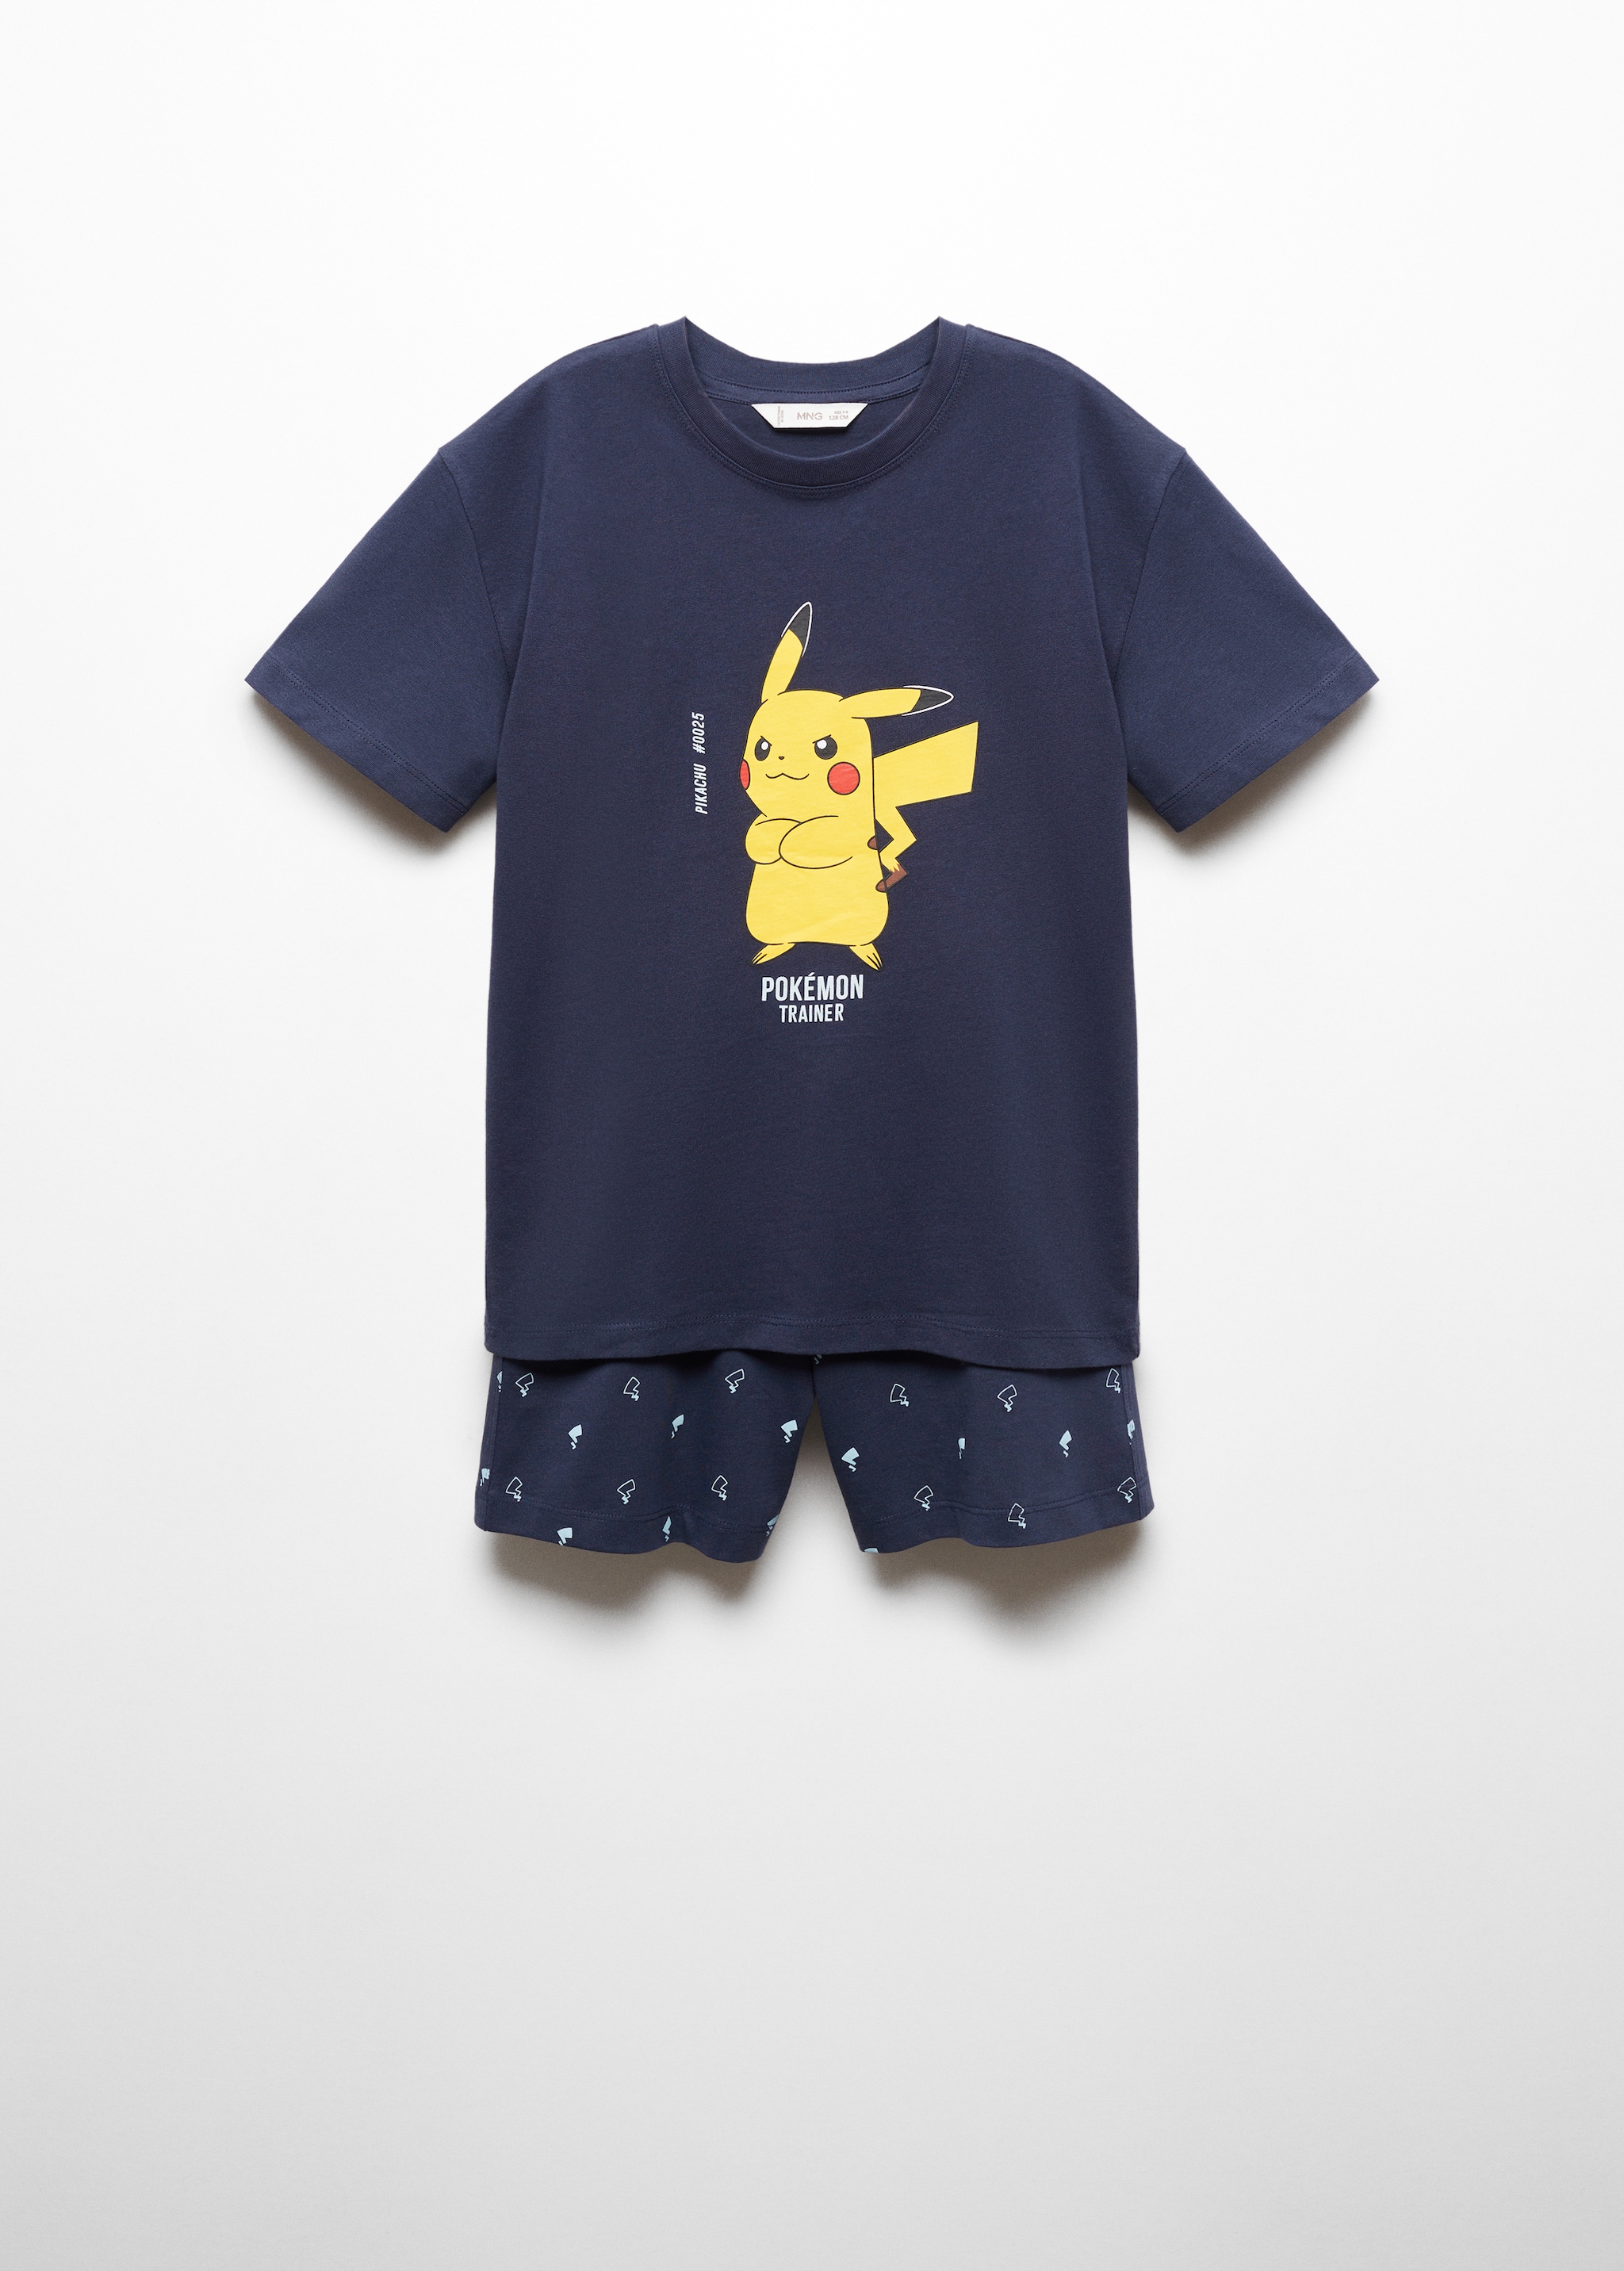 Pikachu Pokemon Pyjamas - Изделие без модели